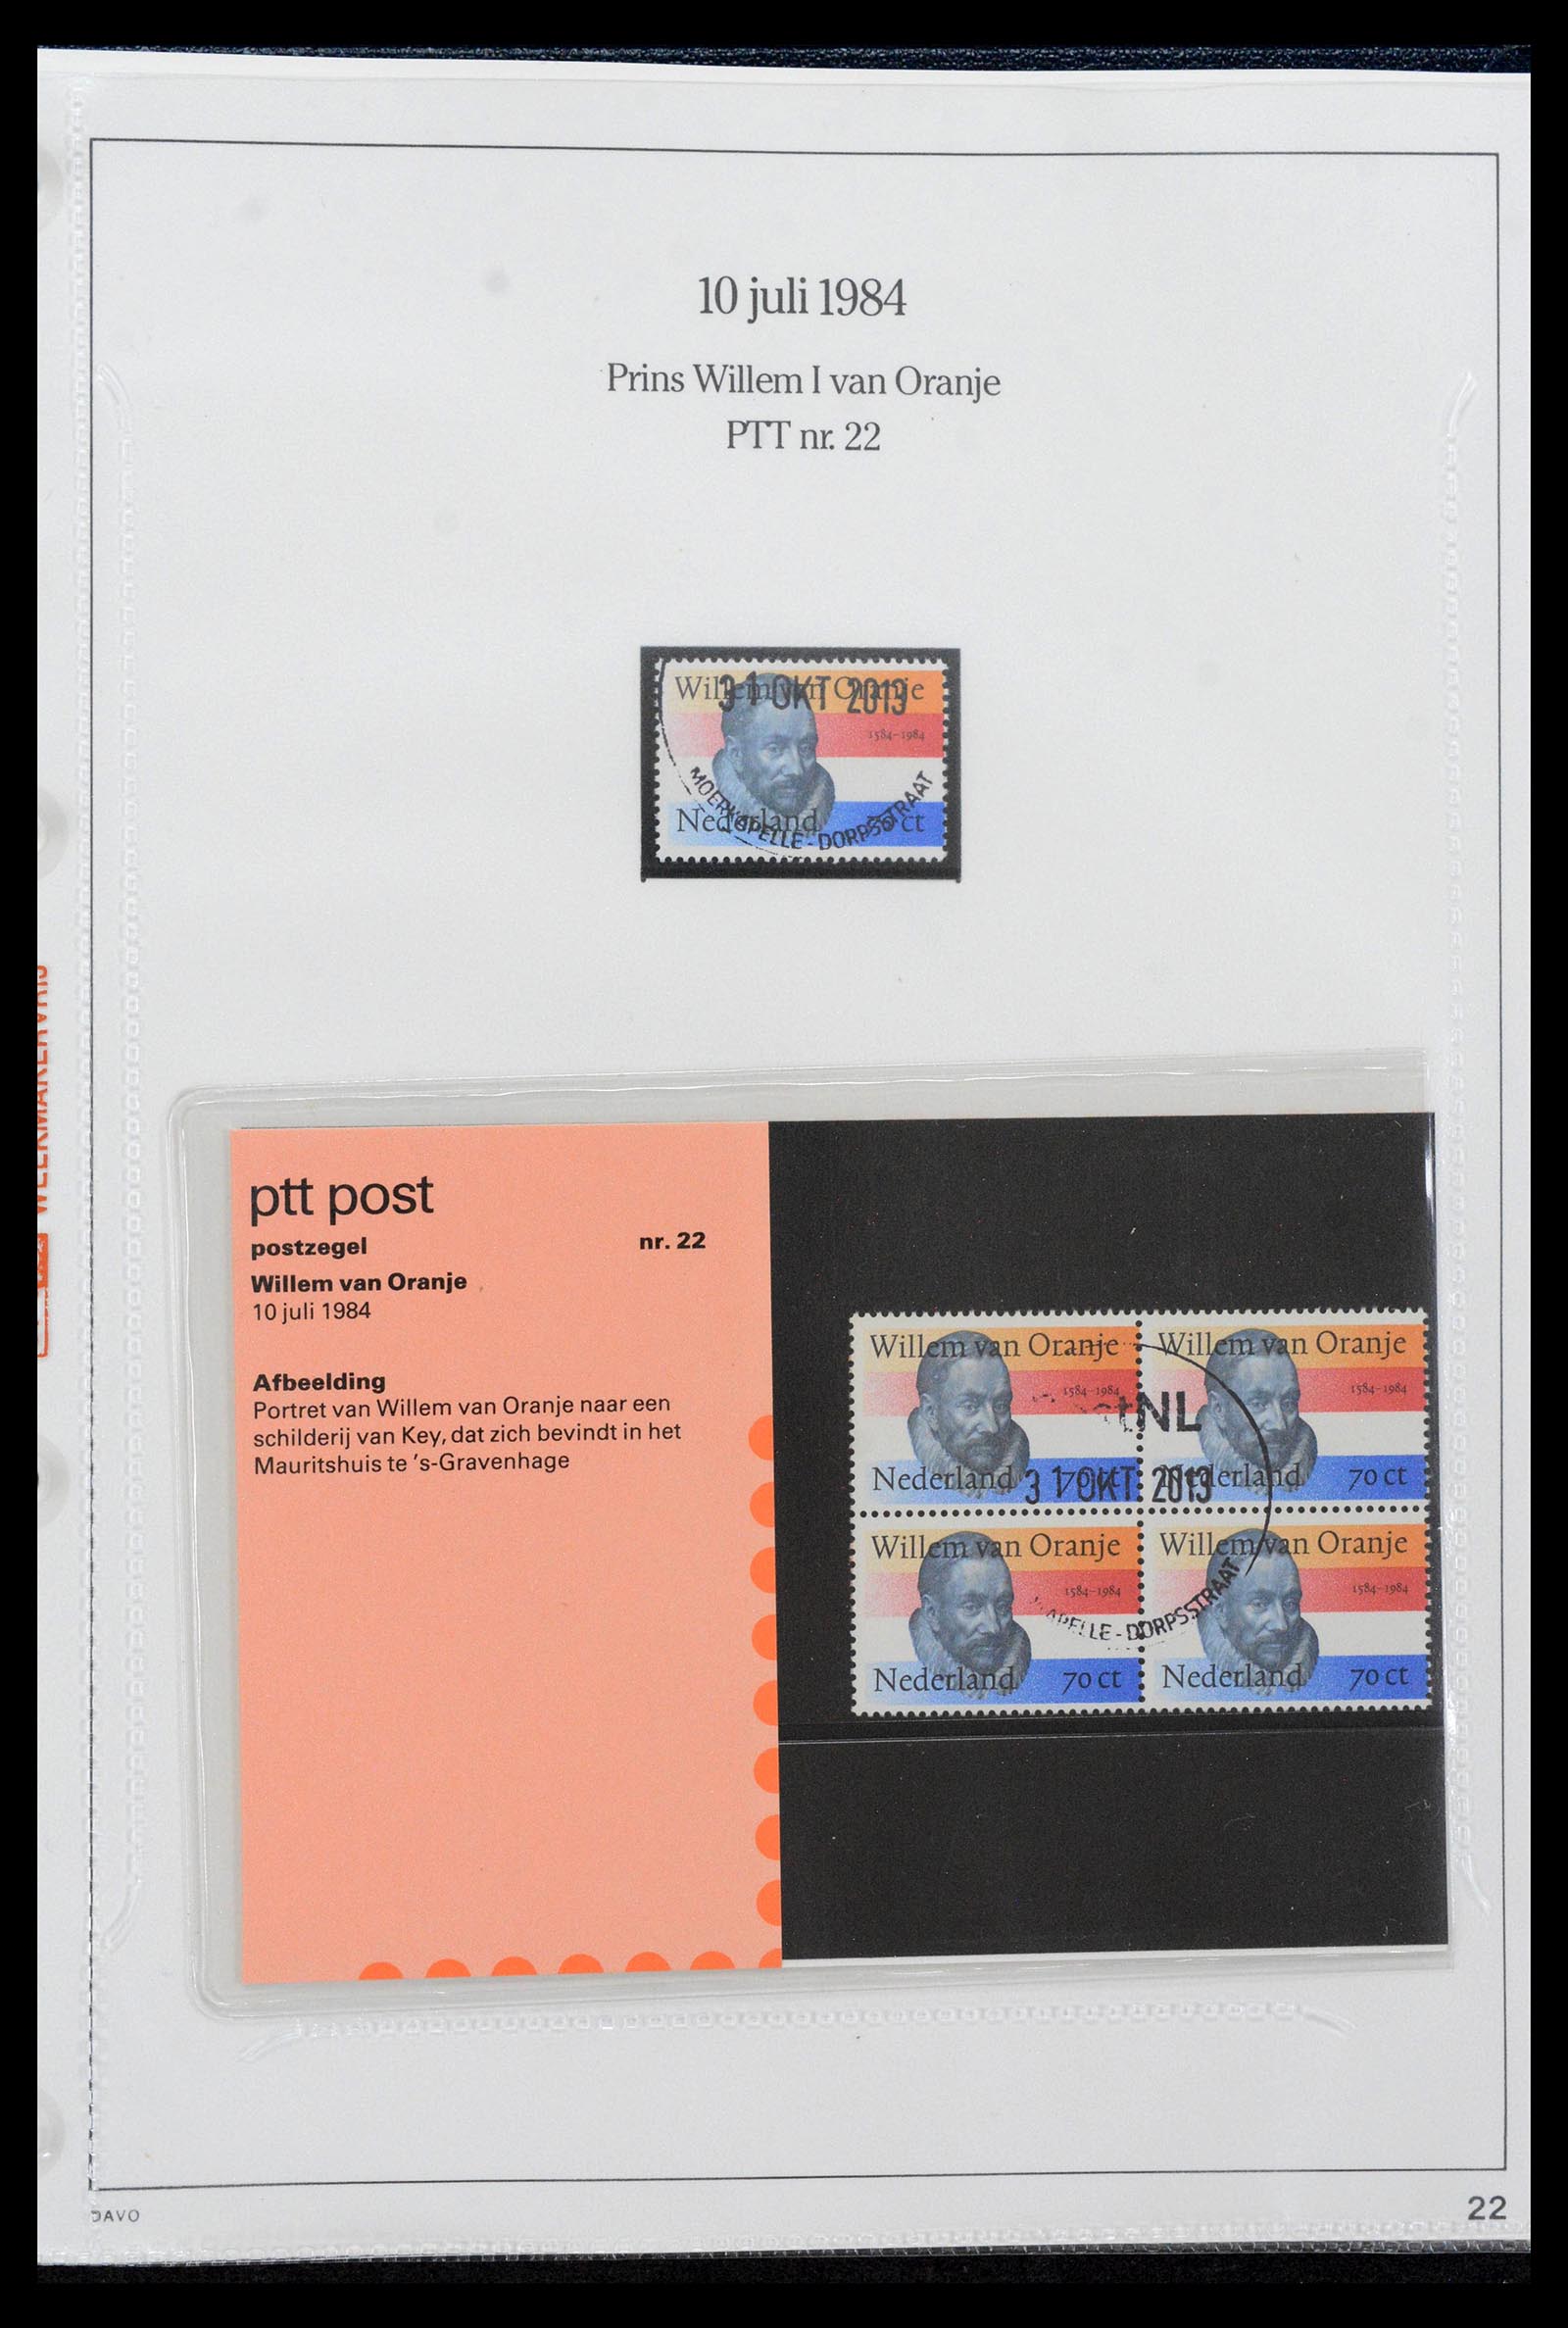 39121 0022 - Stamp collection 39121 Netherlands presentationpacks 1982-2001.